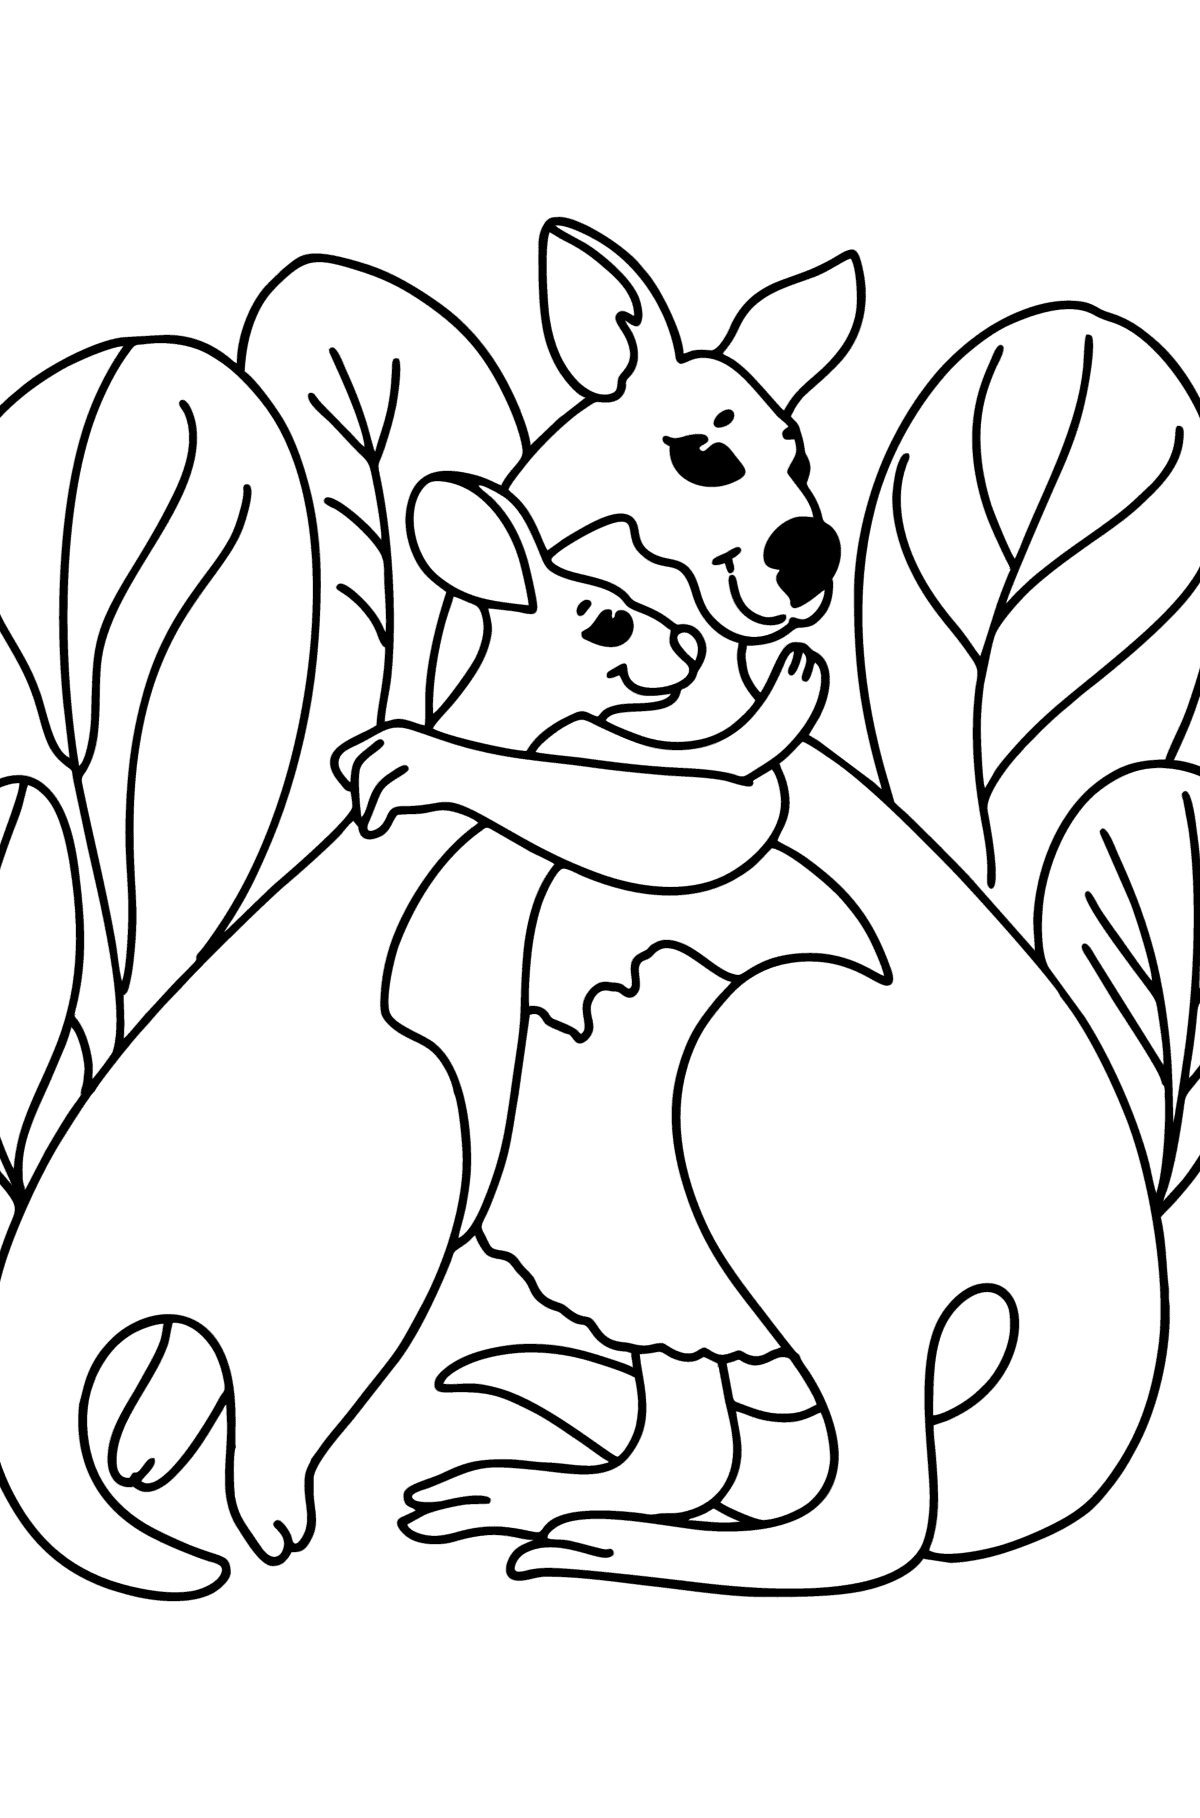 Desenho de canguru fofo para colorir - Imagens para Colorir para Crianças